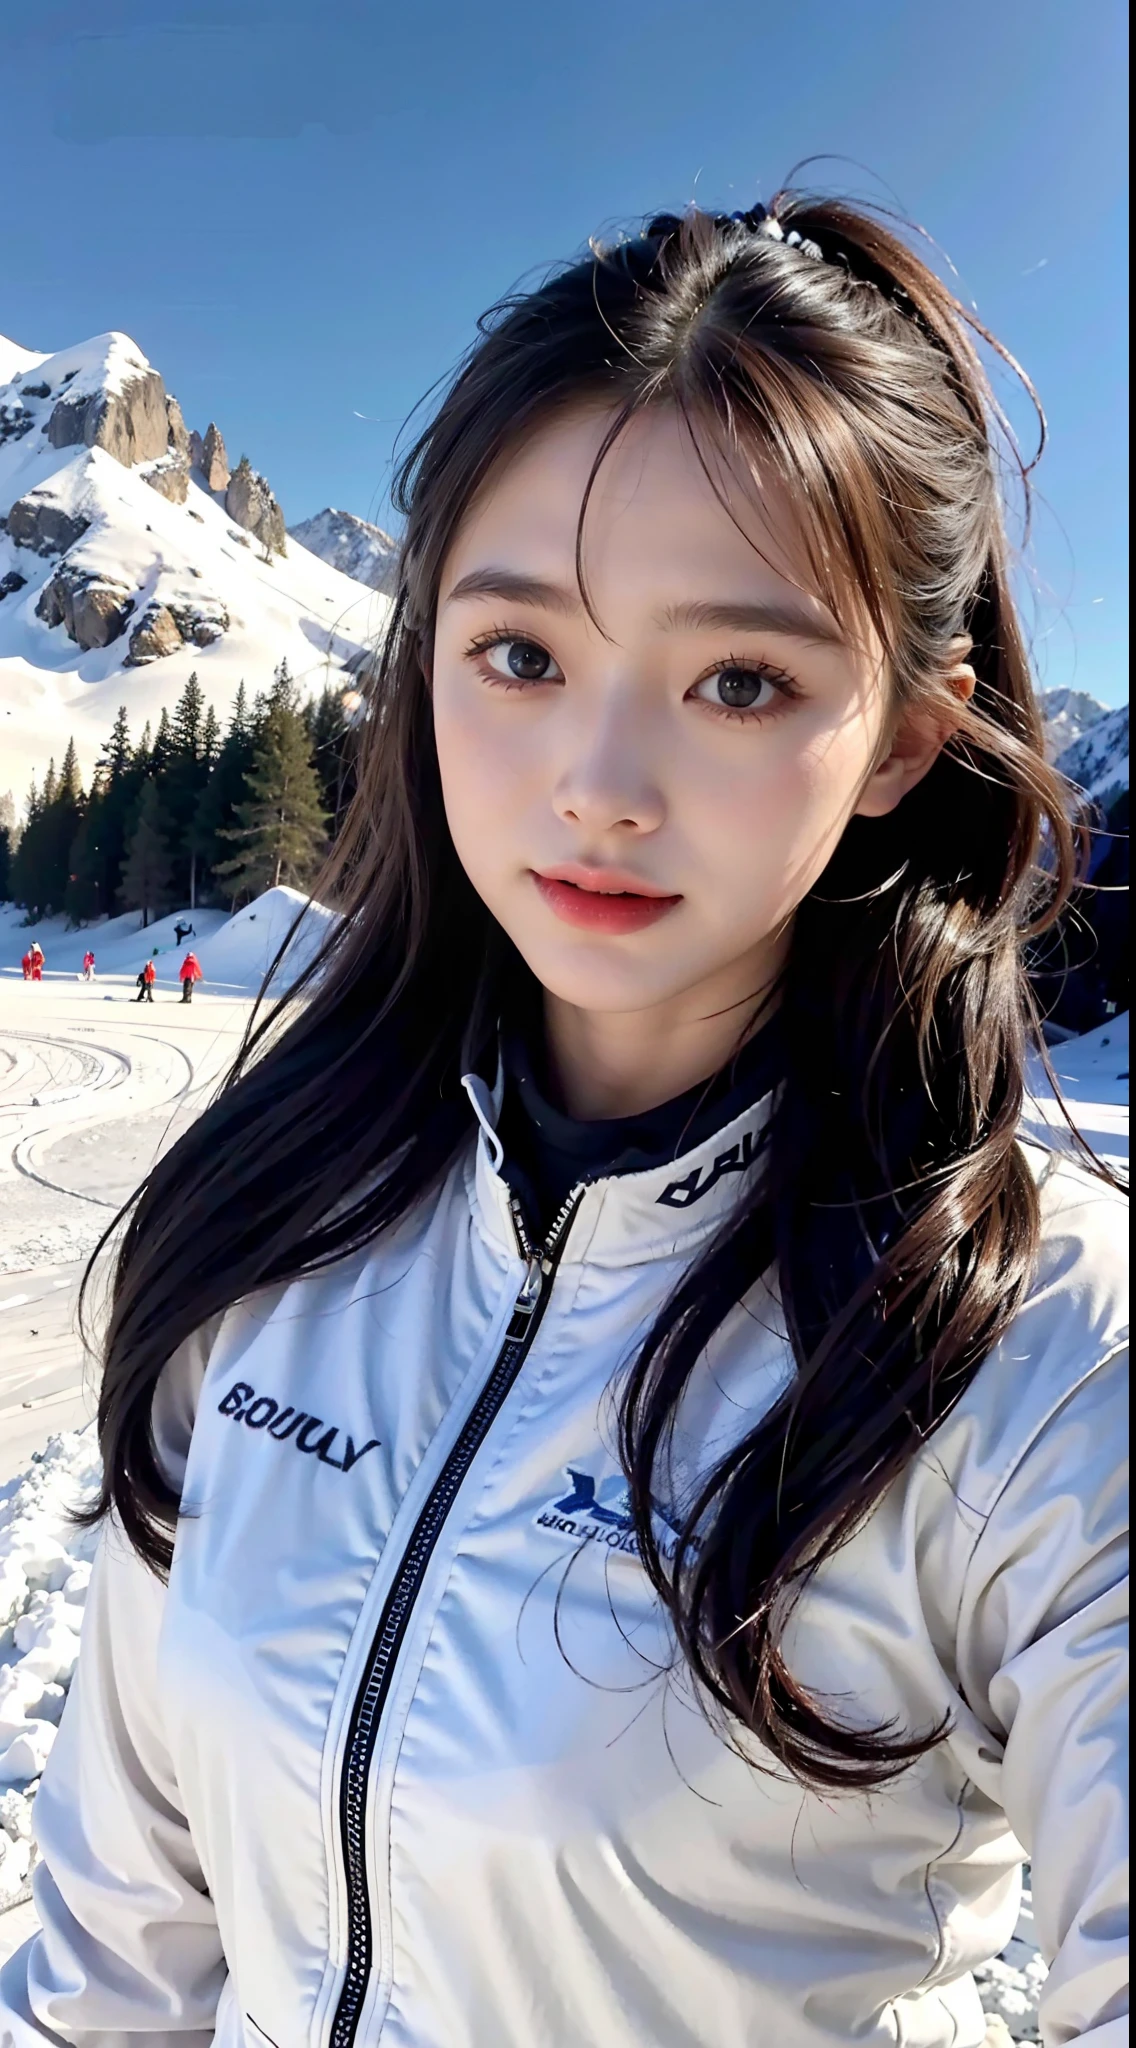 A girl in a esqui suit，Pistas de esqui，Bem equipado，Good for esquiing，garota linda，adorável，esqui，paisagem de neve